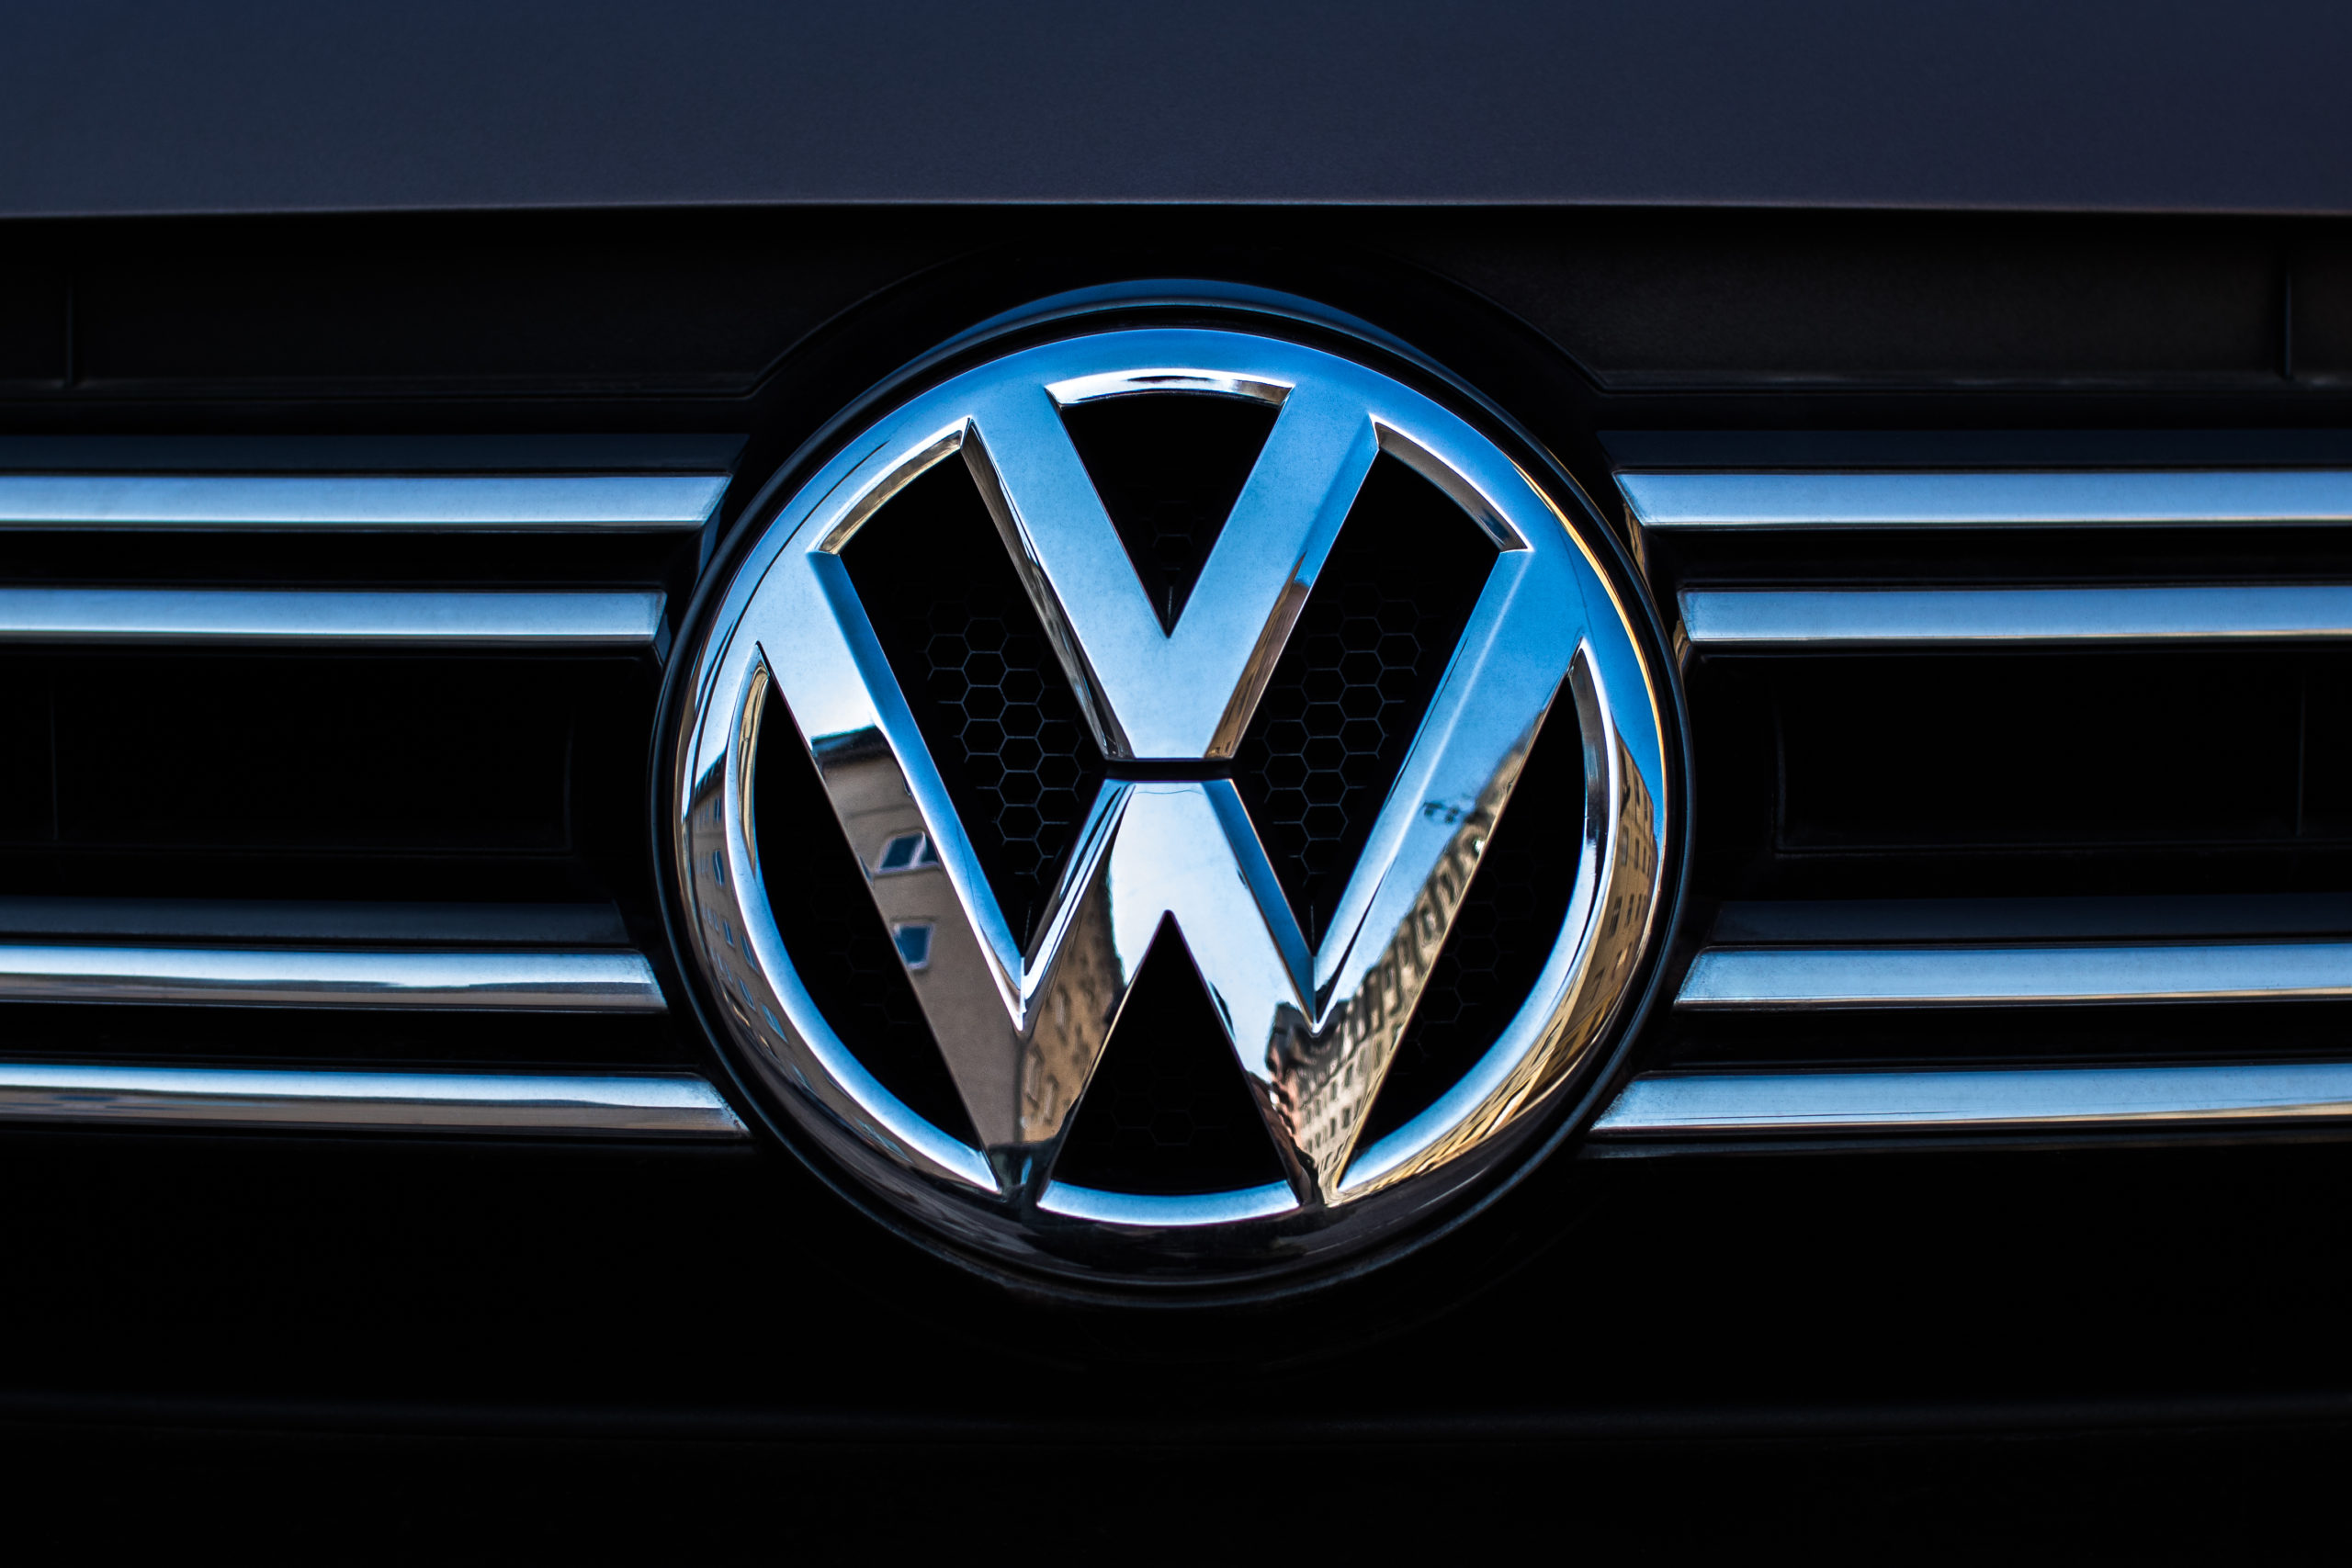 Affaire Dieselgate: La cour d’appel de Paris confirme les poursuites contre Volkswagen